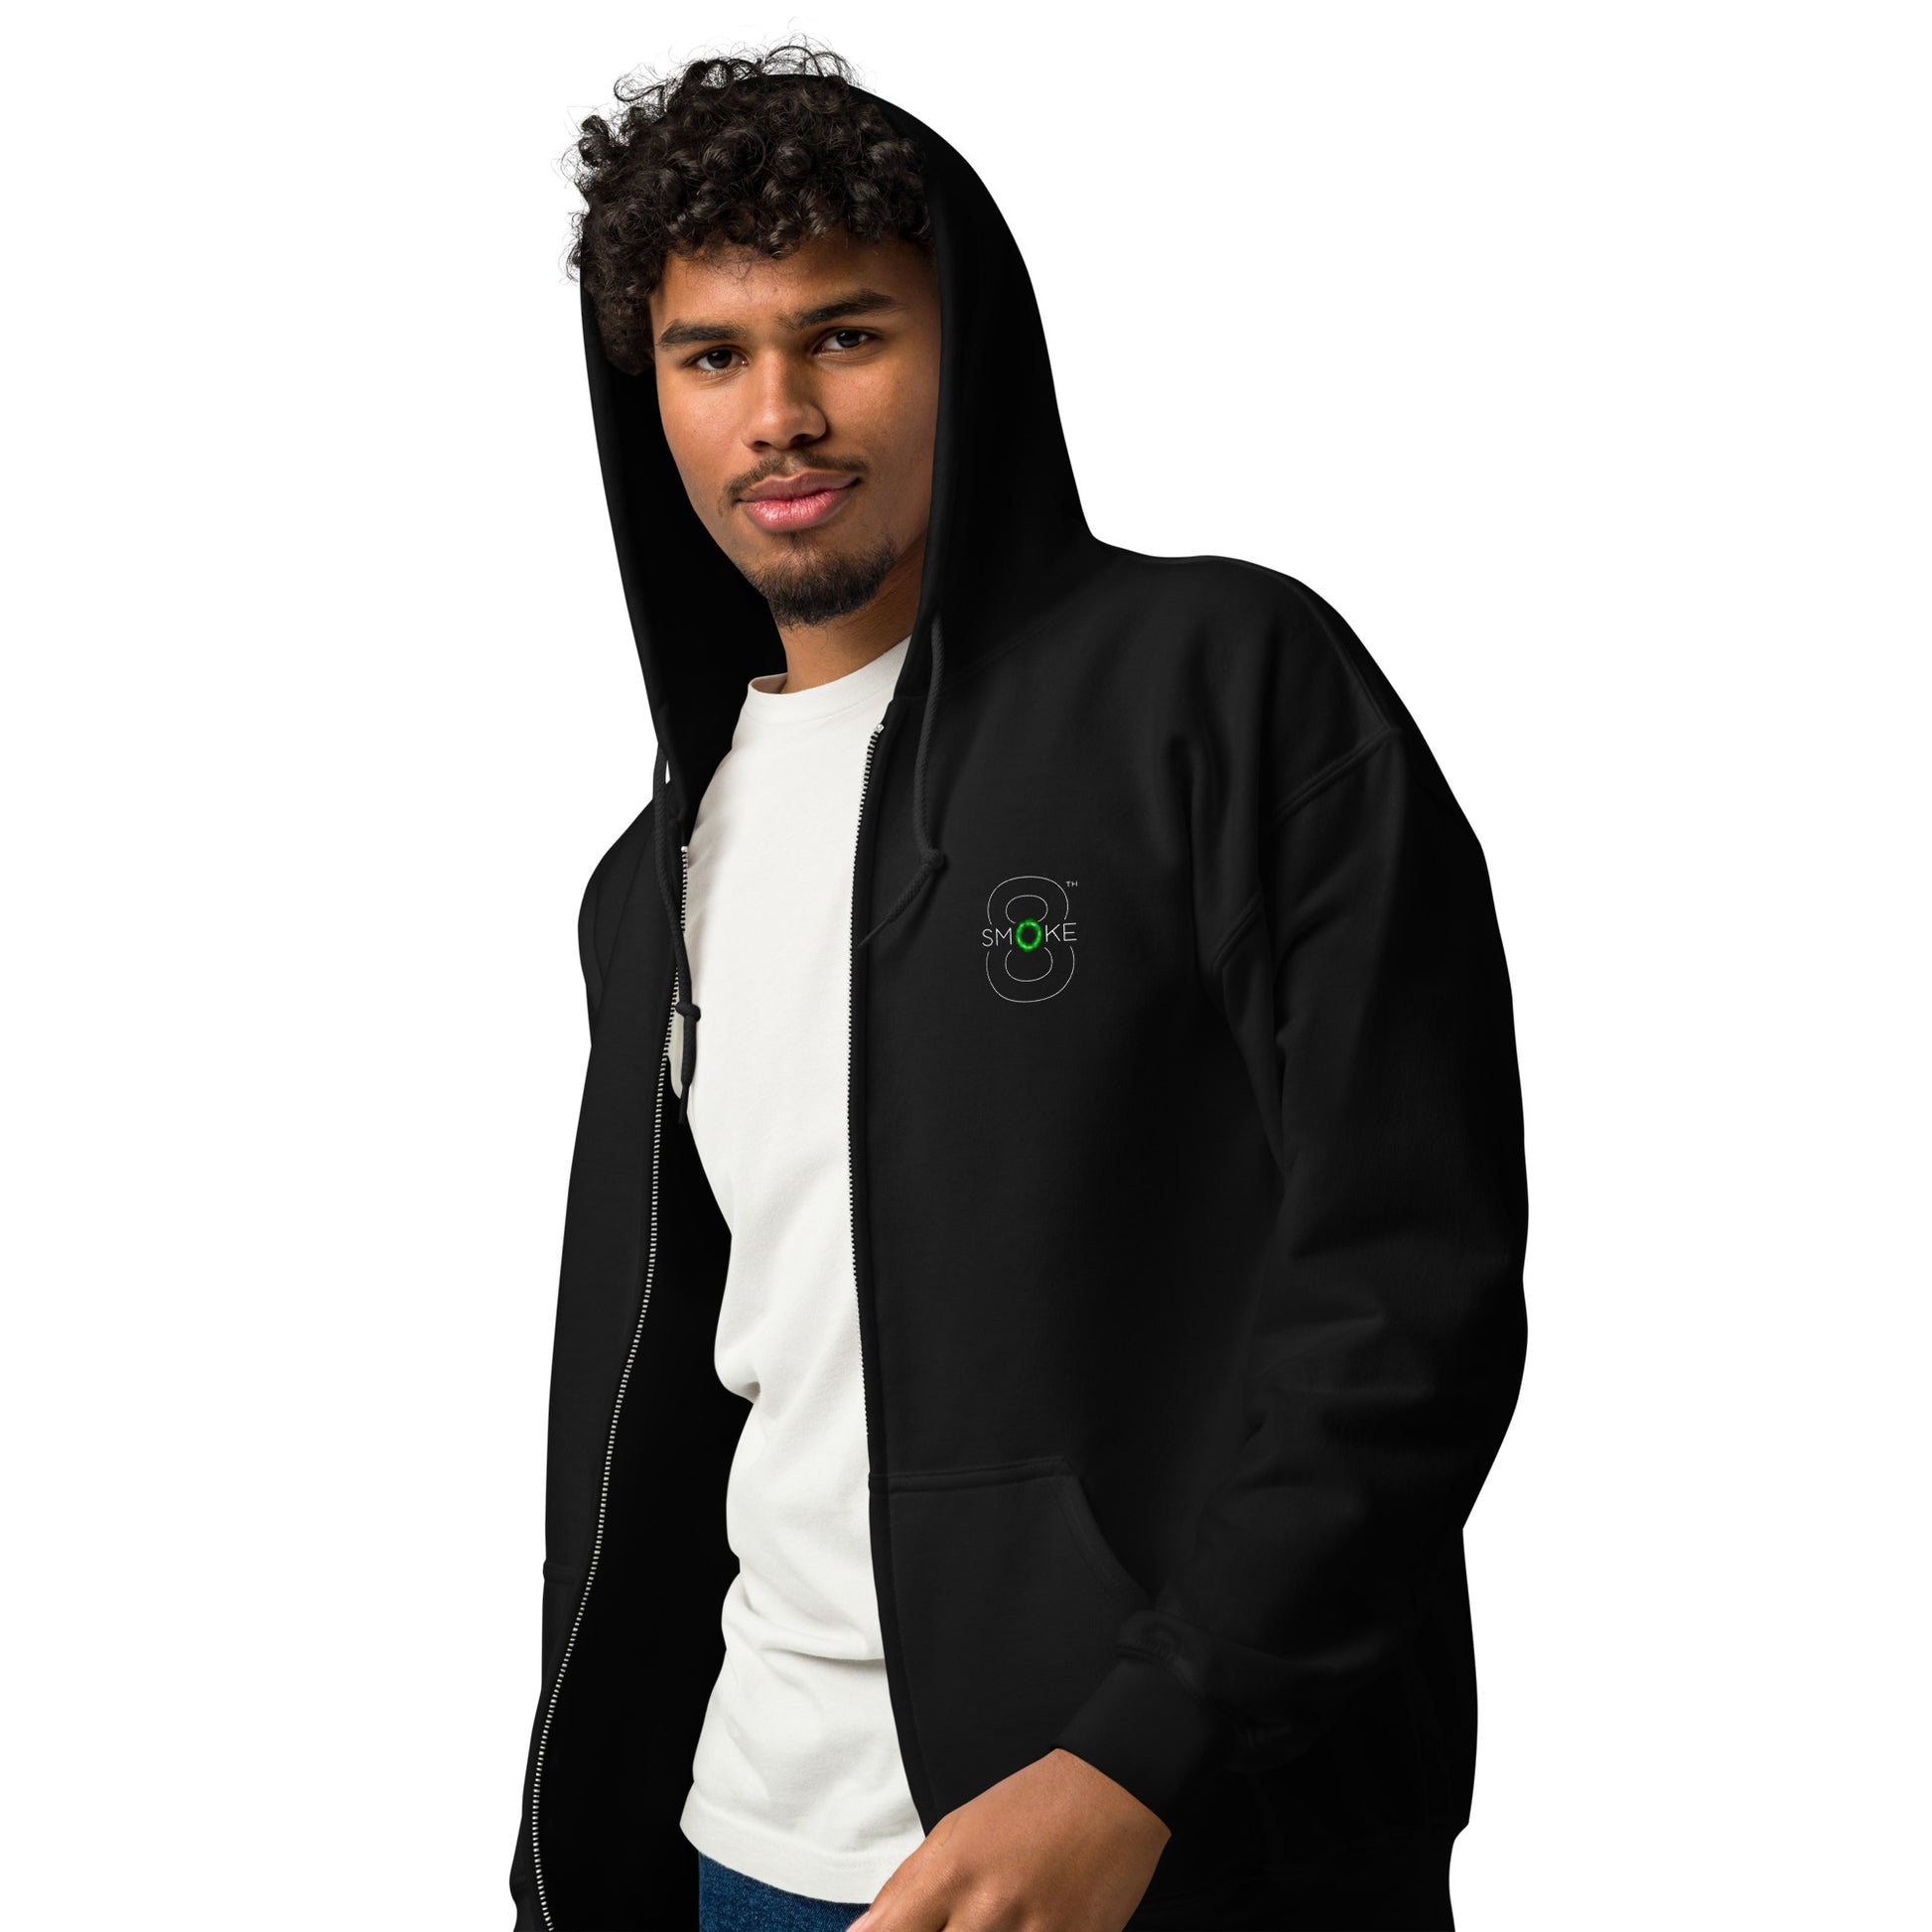 8th Smoke Unisex heavy blend zip hoodie